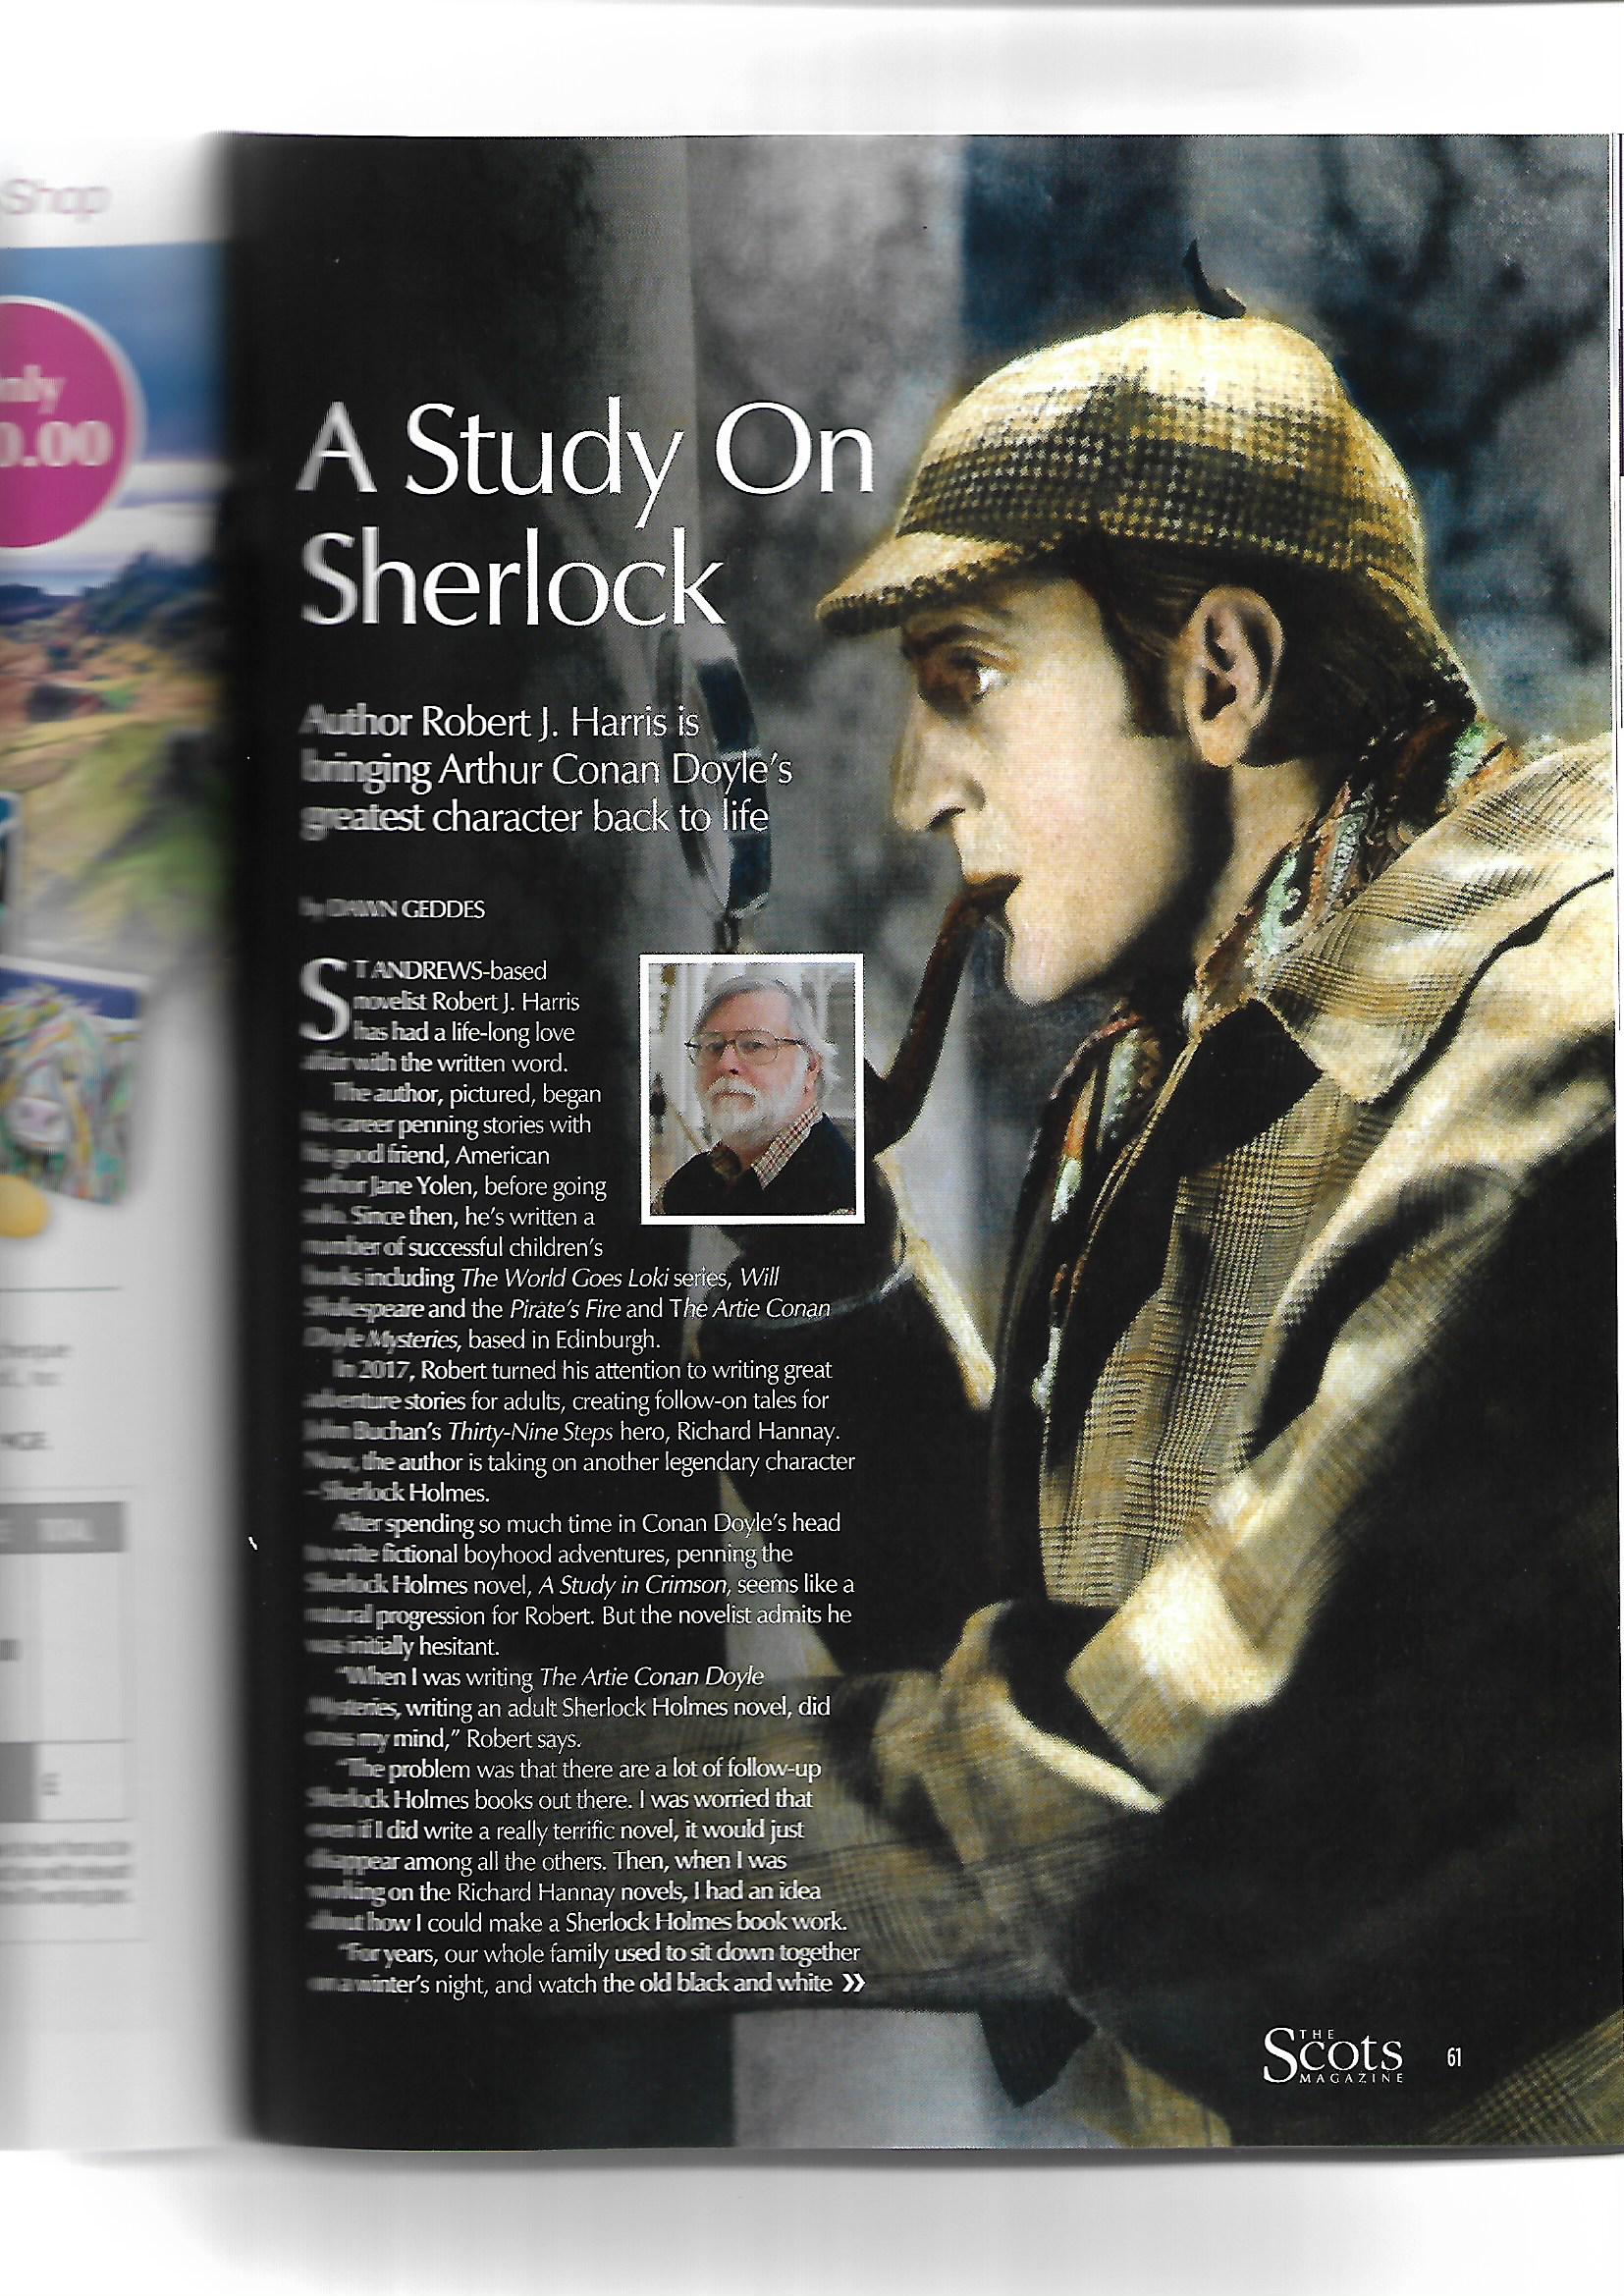 A Study on Sherlock article